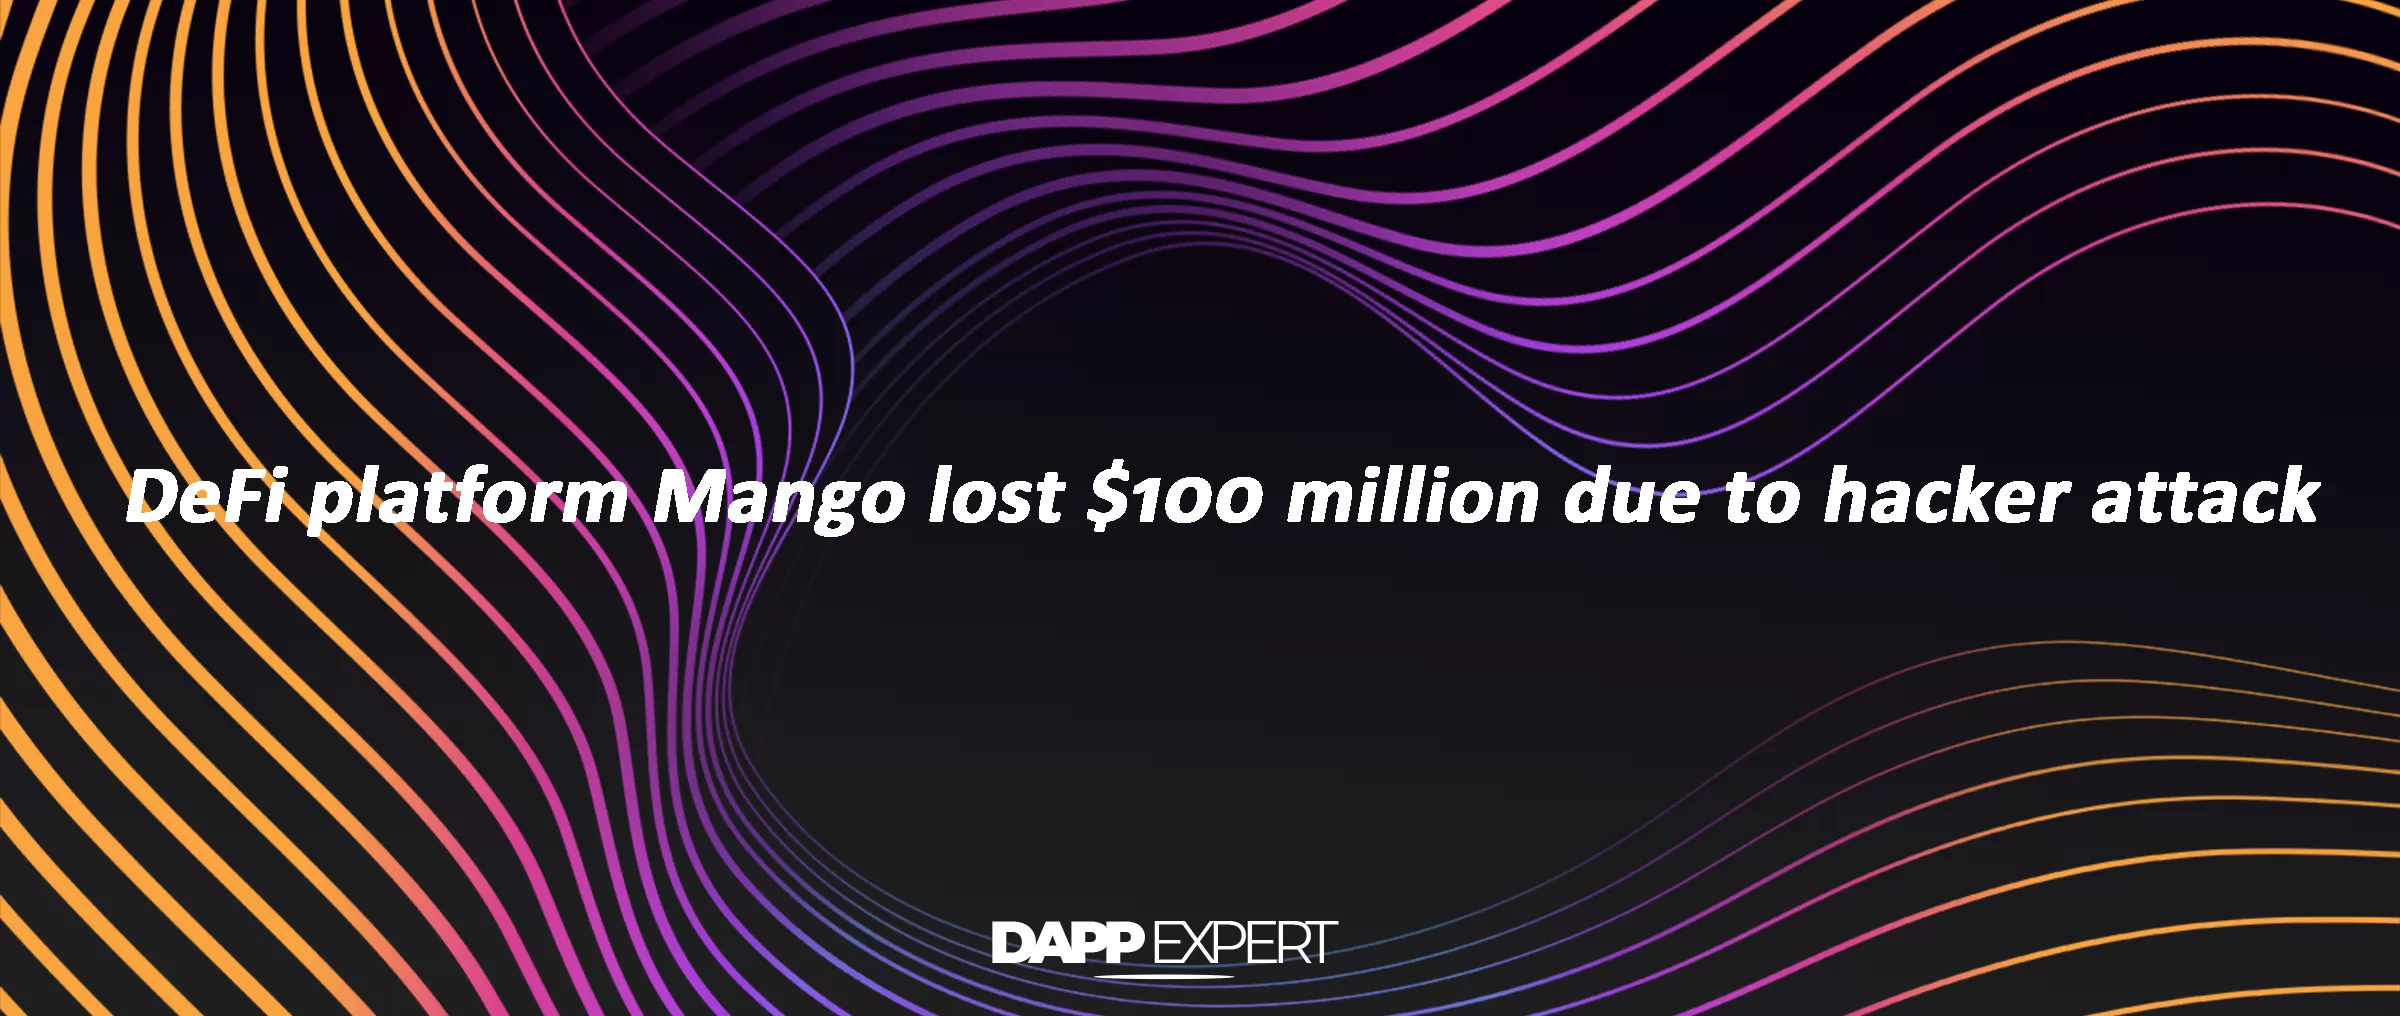 DeFi platform Mango lost $100 million due to hacker attack